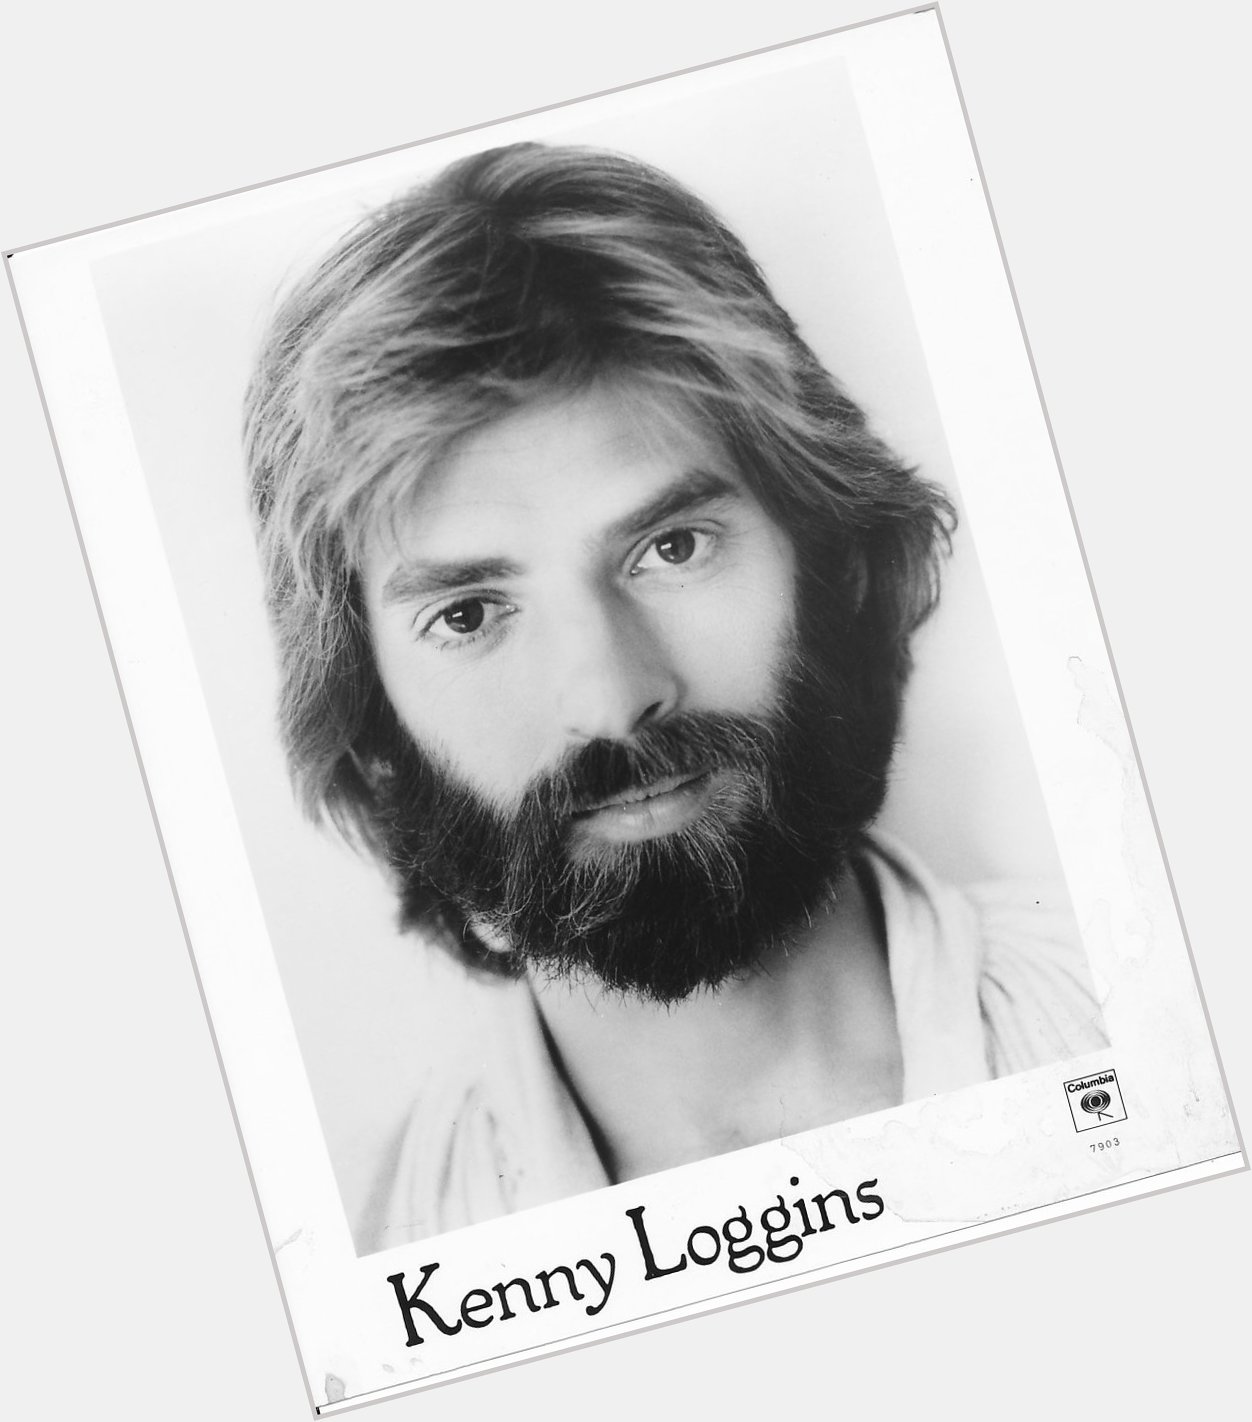 Happy birthday to Kenny Loggins! 